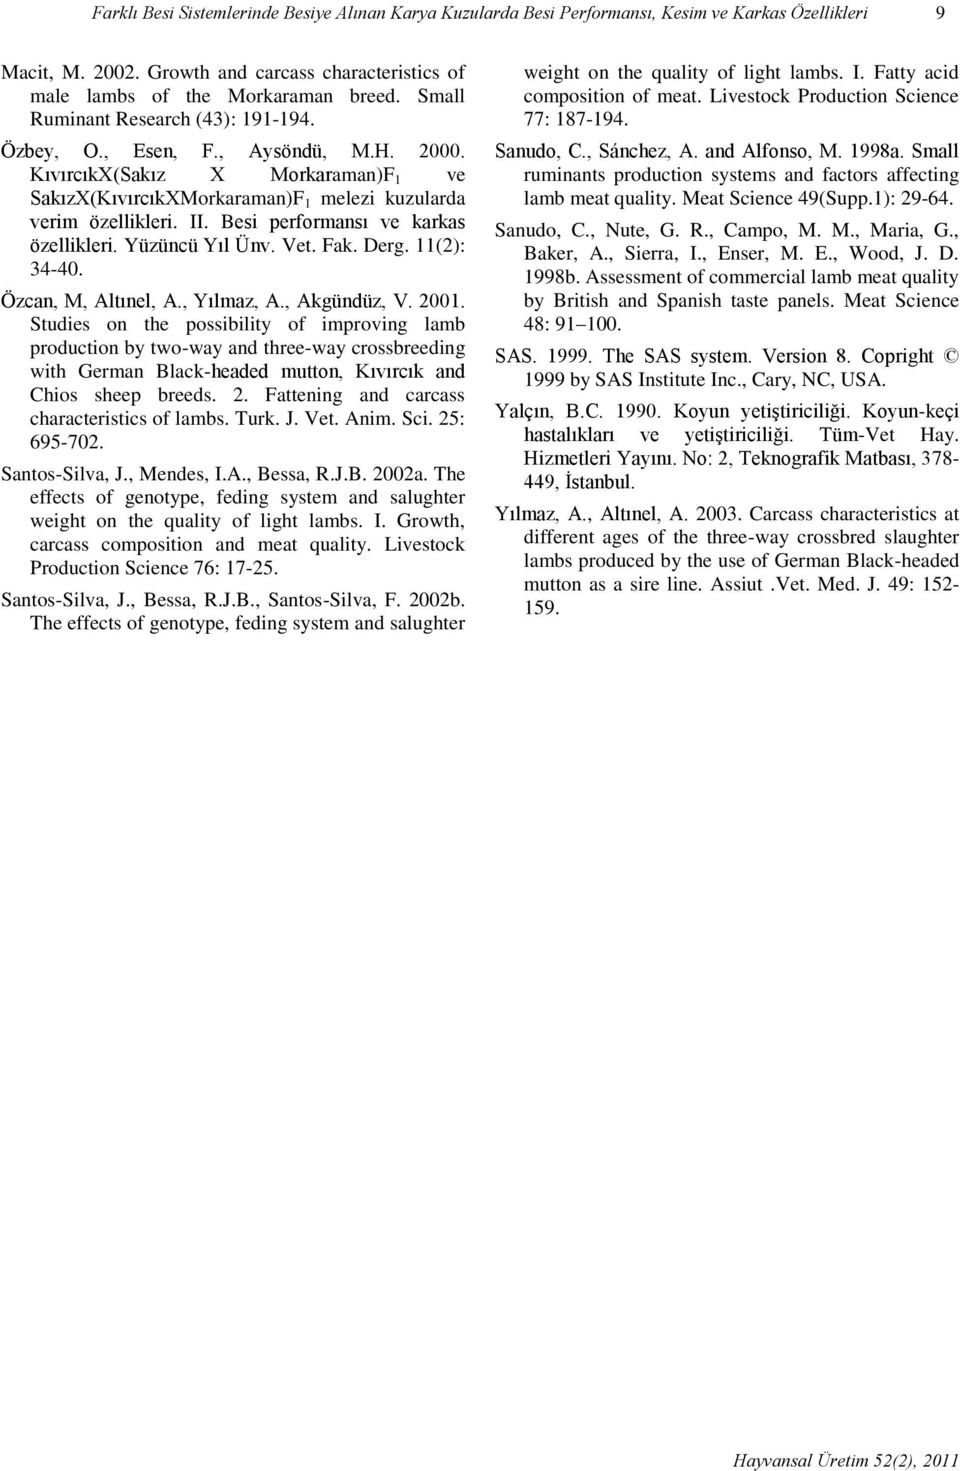 Besi performansı ve karkas özellikleri. Yüzüncü Ünv. Vet. Fak. Derg. 11(2): 34-40. Özcan, M, Altınel, A., maz, A., Akgündüz, V. 2001.